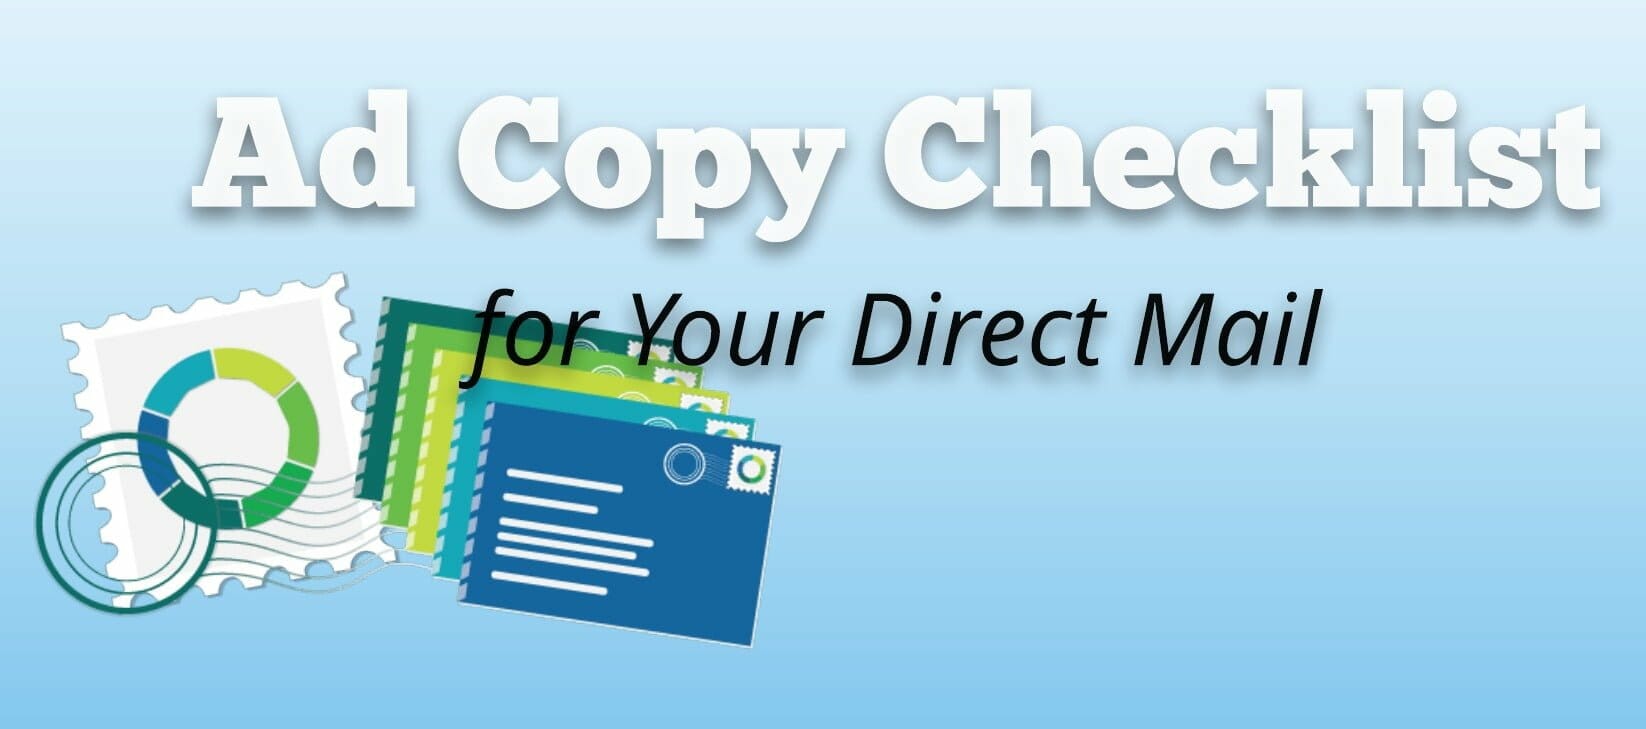 Ad copy checklist